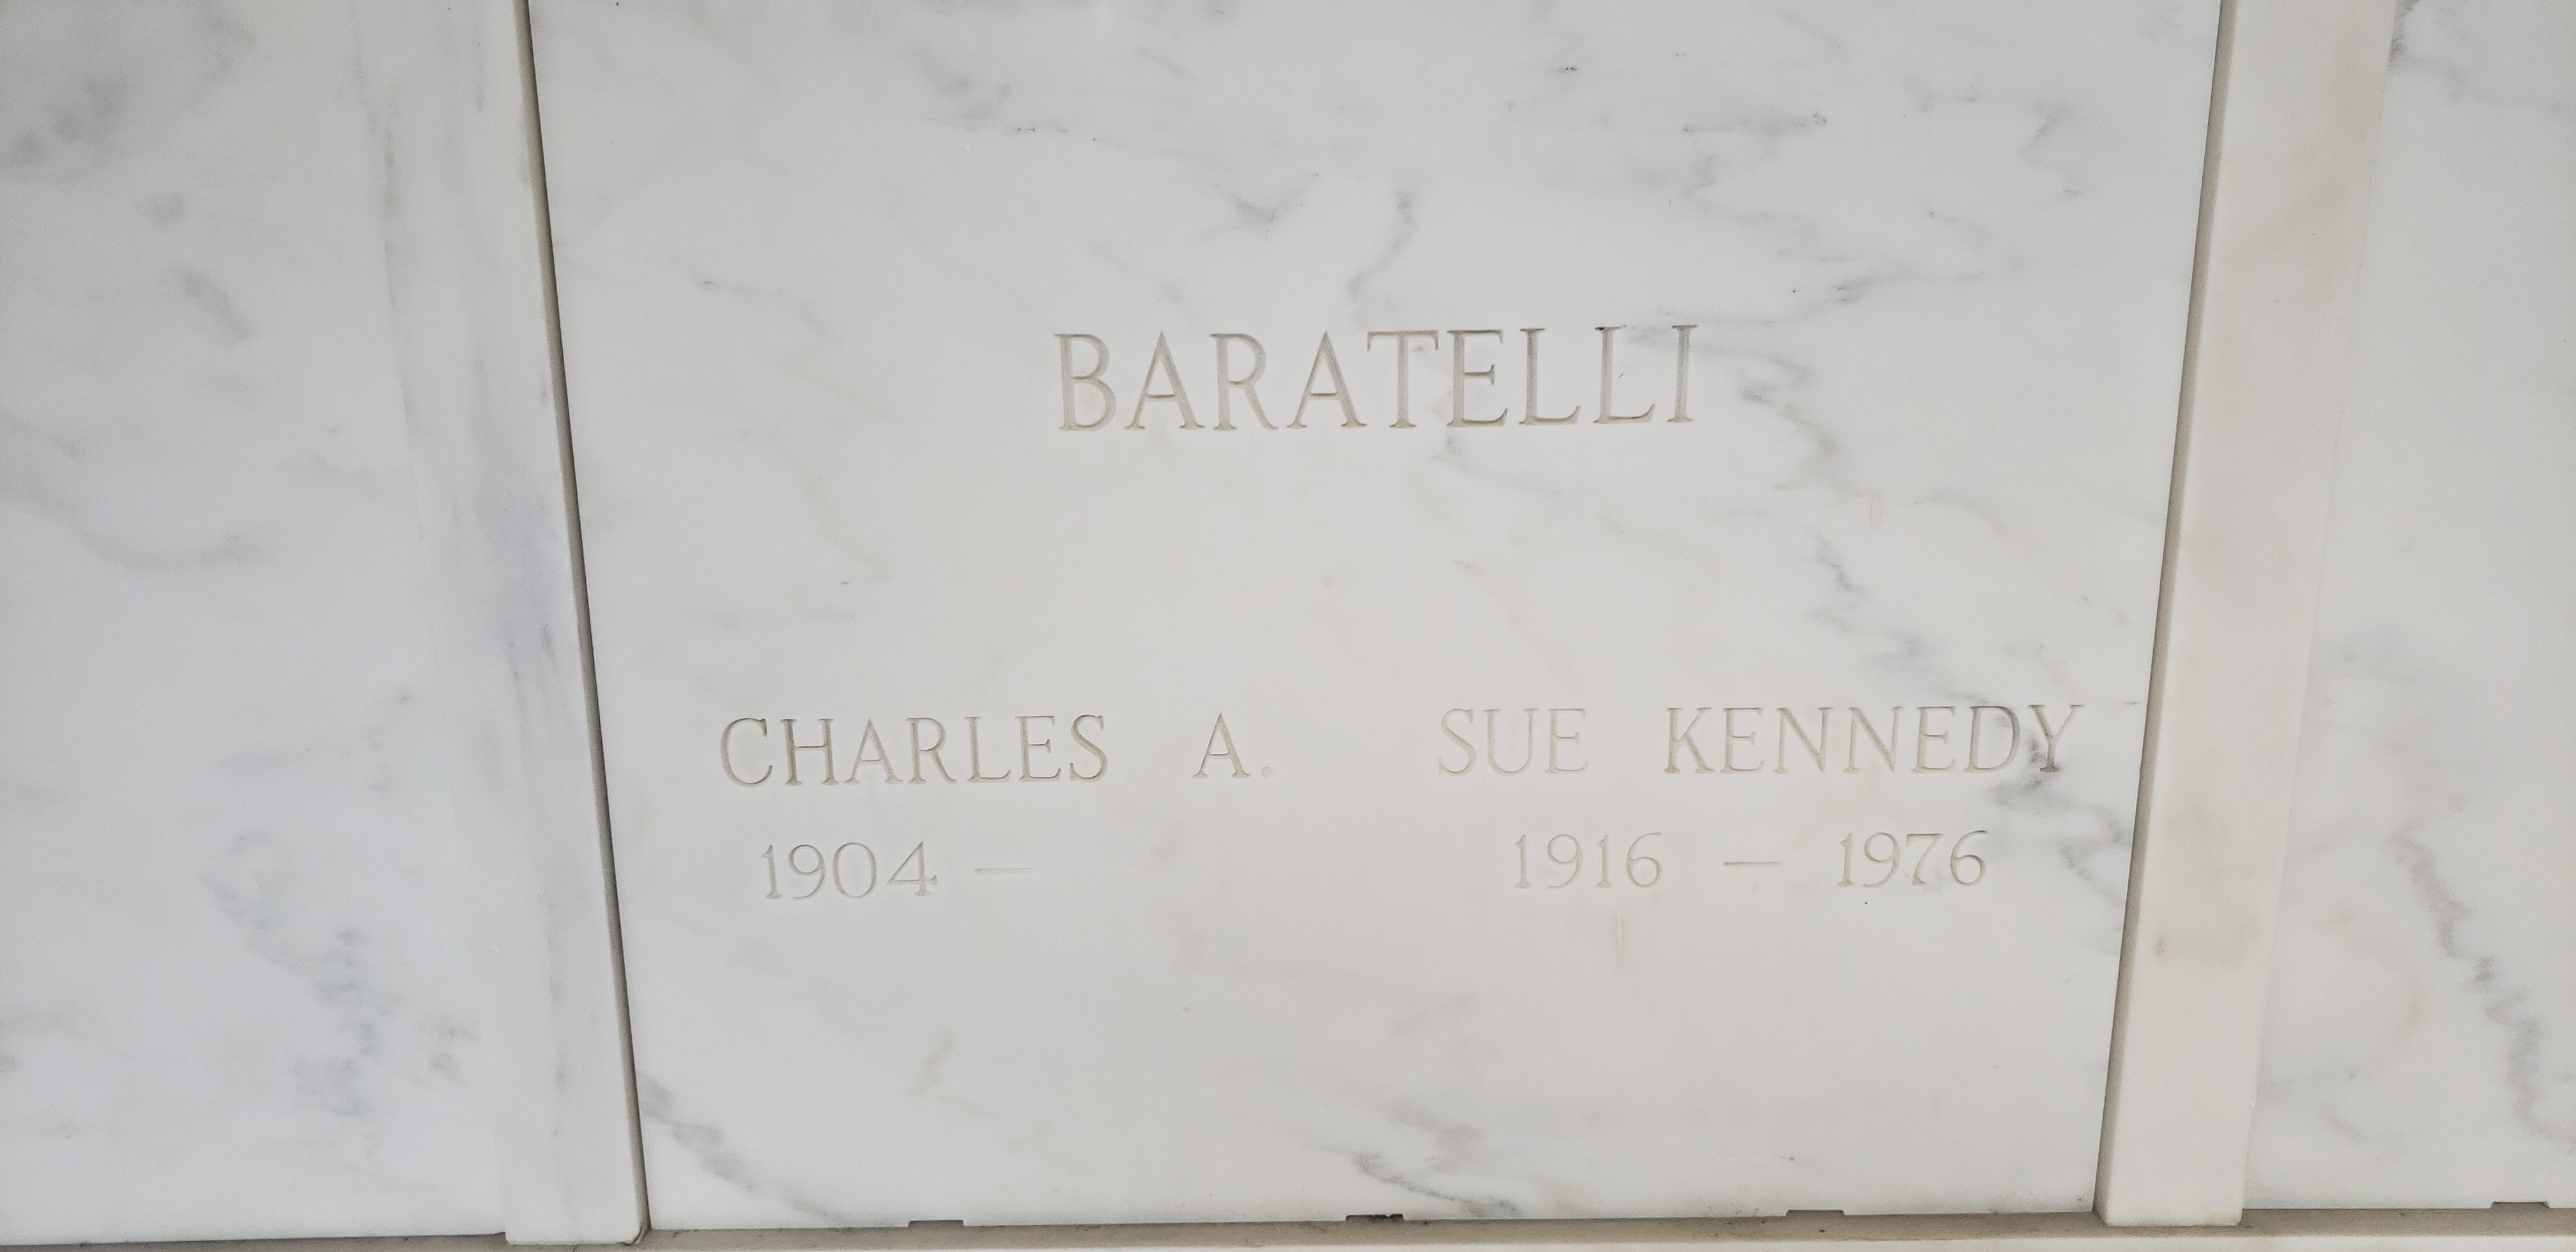 Charles A Baratelli